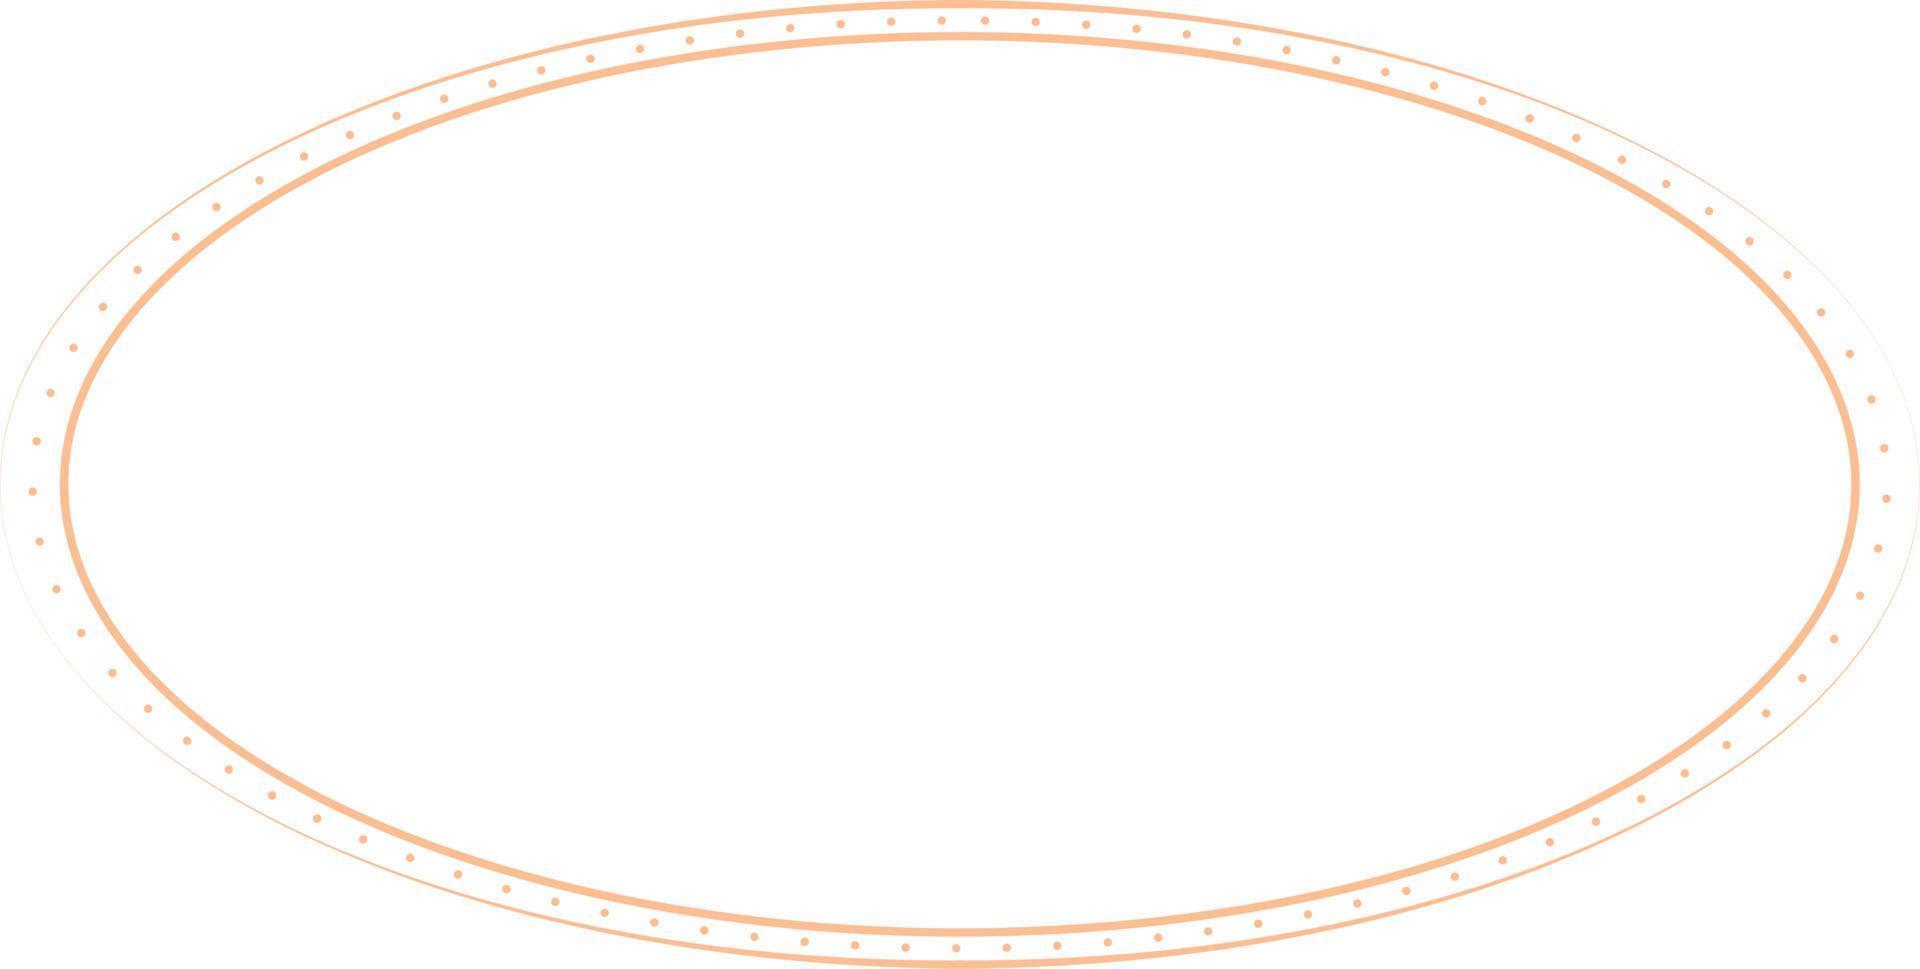 ovale Rahmen auf weißem Hintergrund. trendiges Gestaltungselement für Rahmen, Logo, Verdunkelungstätowierung, Symbol, Netz, Drucke, Plakate, Vorlagen, Muster und abstrakten Hintergrund vektor